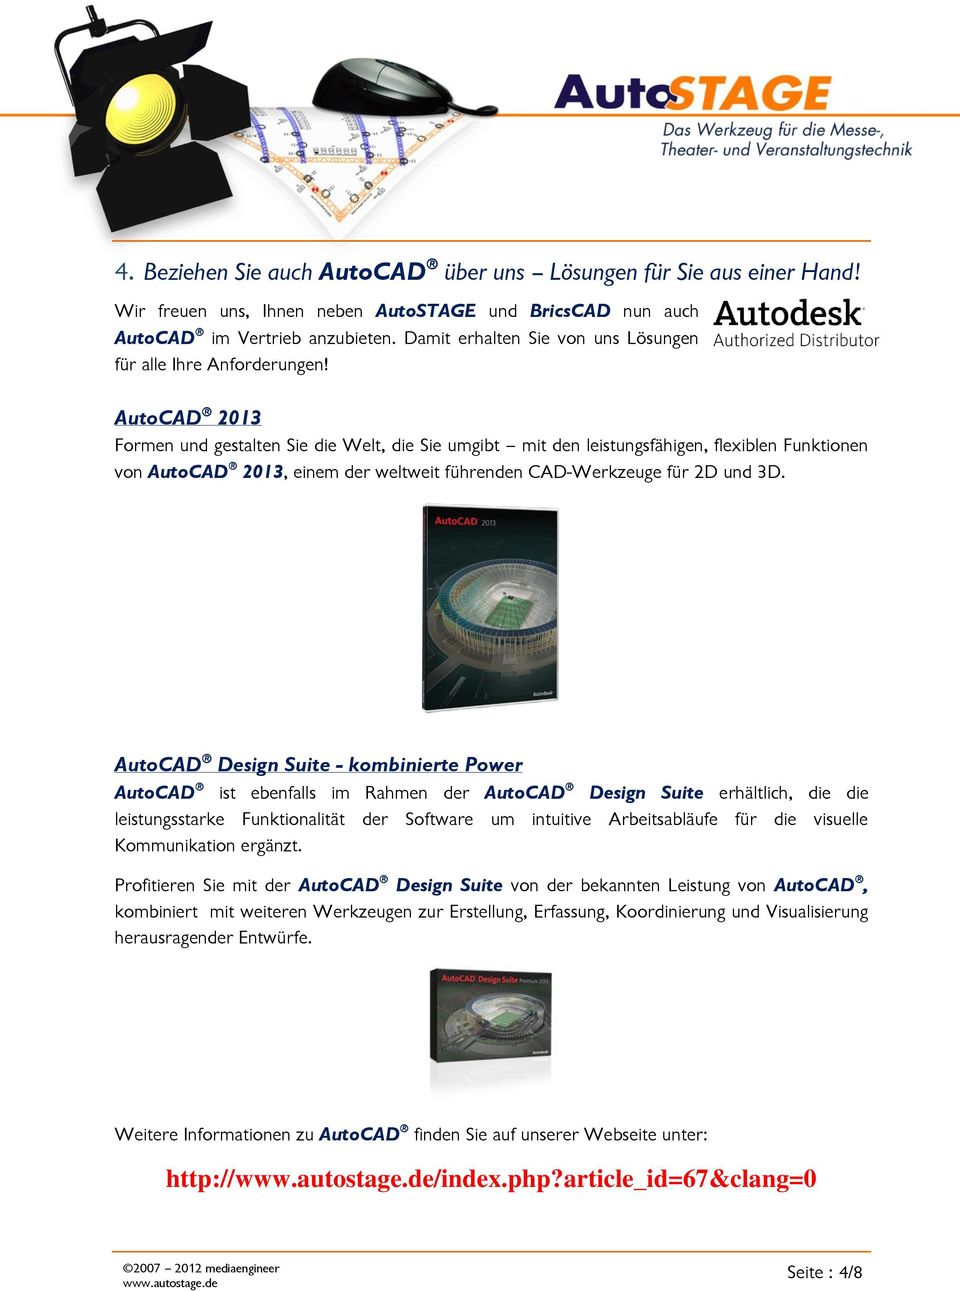 AutoCAD 2013 Formen und gestalten Sie die Welt, die Sie umgibt mit den leistungsfähigen, flexiblen Funktionen von AutoCAD 2013, einem der weltweit führenden CAD-Werkzeuge für 2D und 3D.